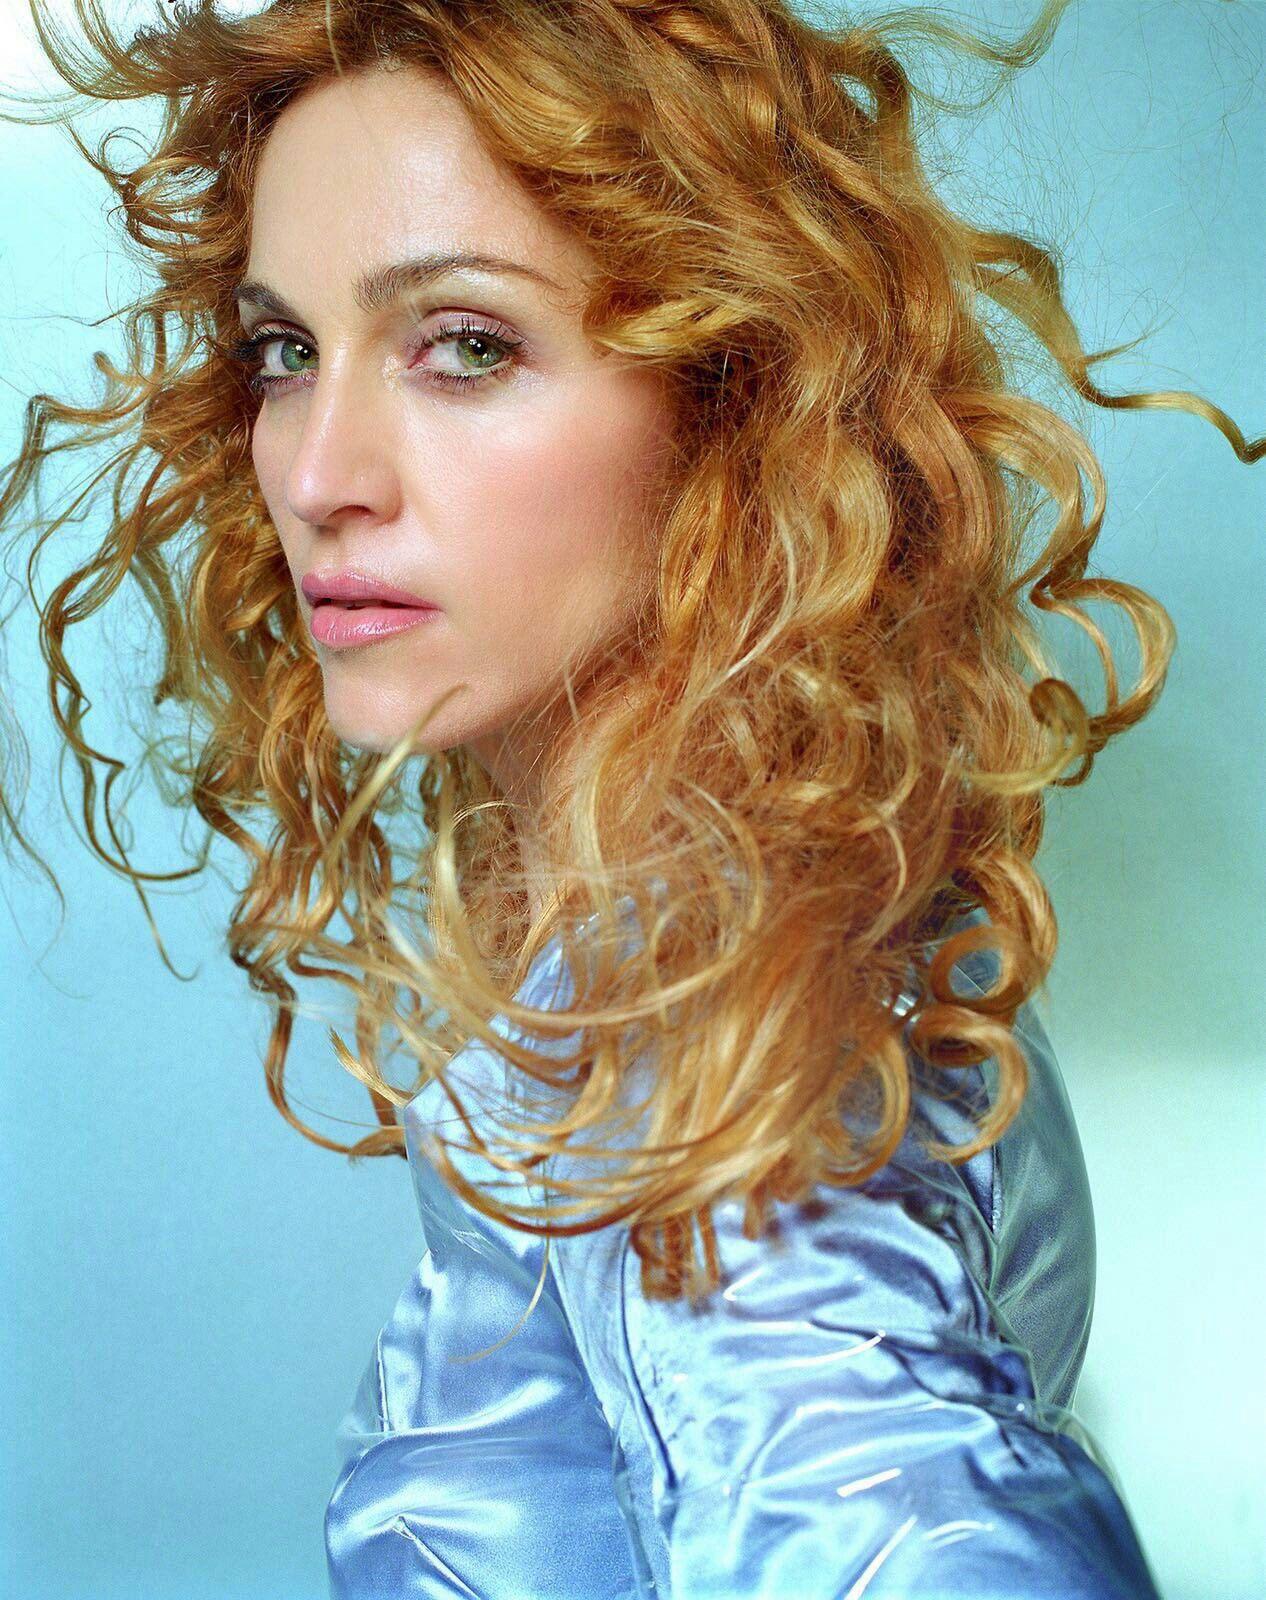 Ray of Light ❤. Madonna. Madonna, Madonna 90s, Madonna